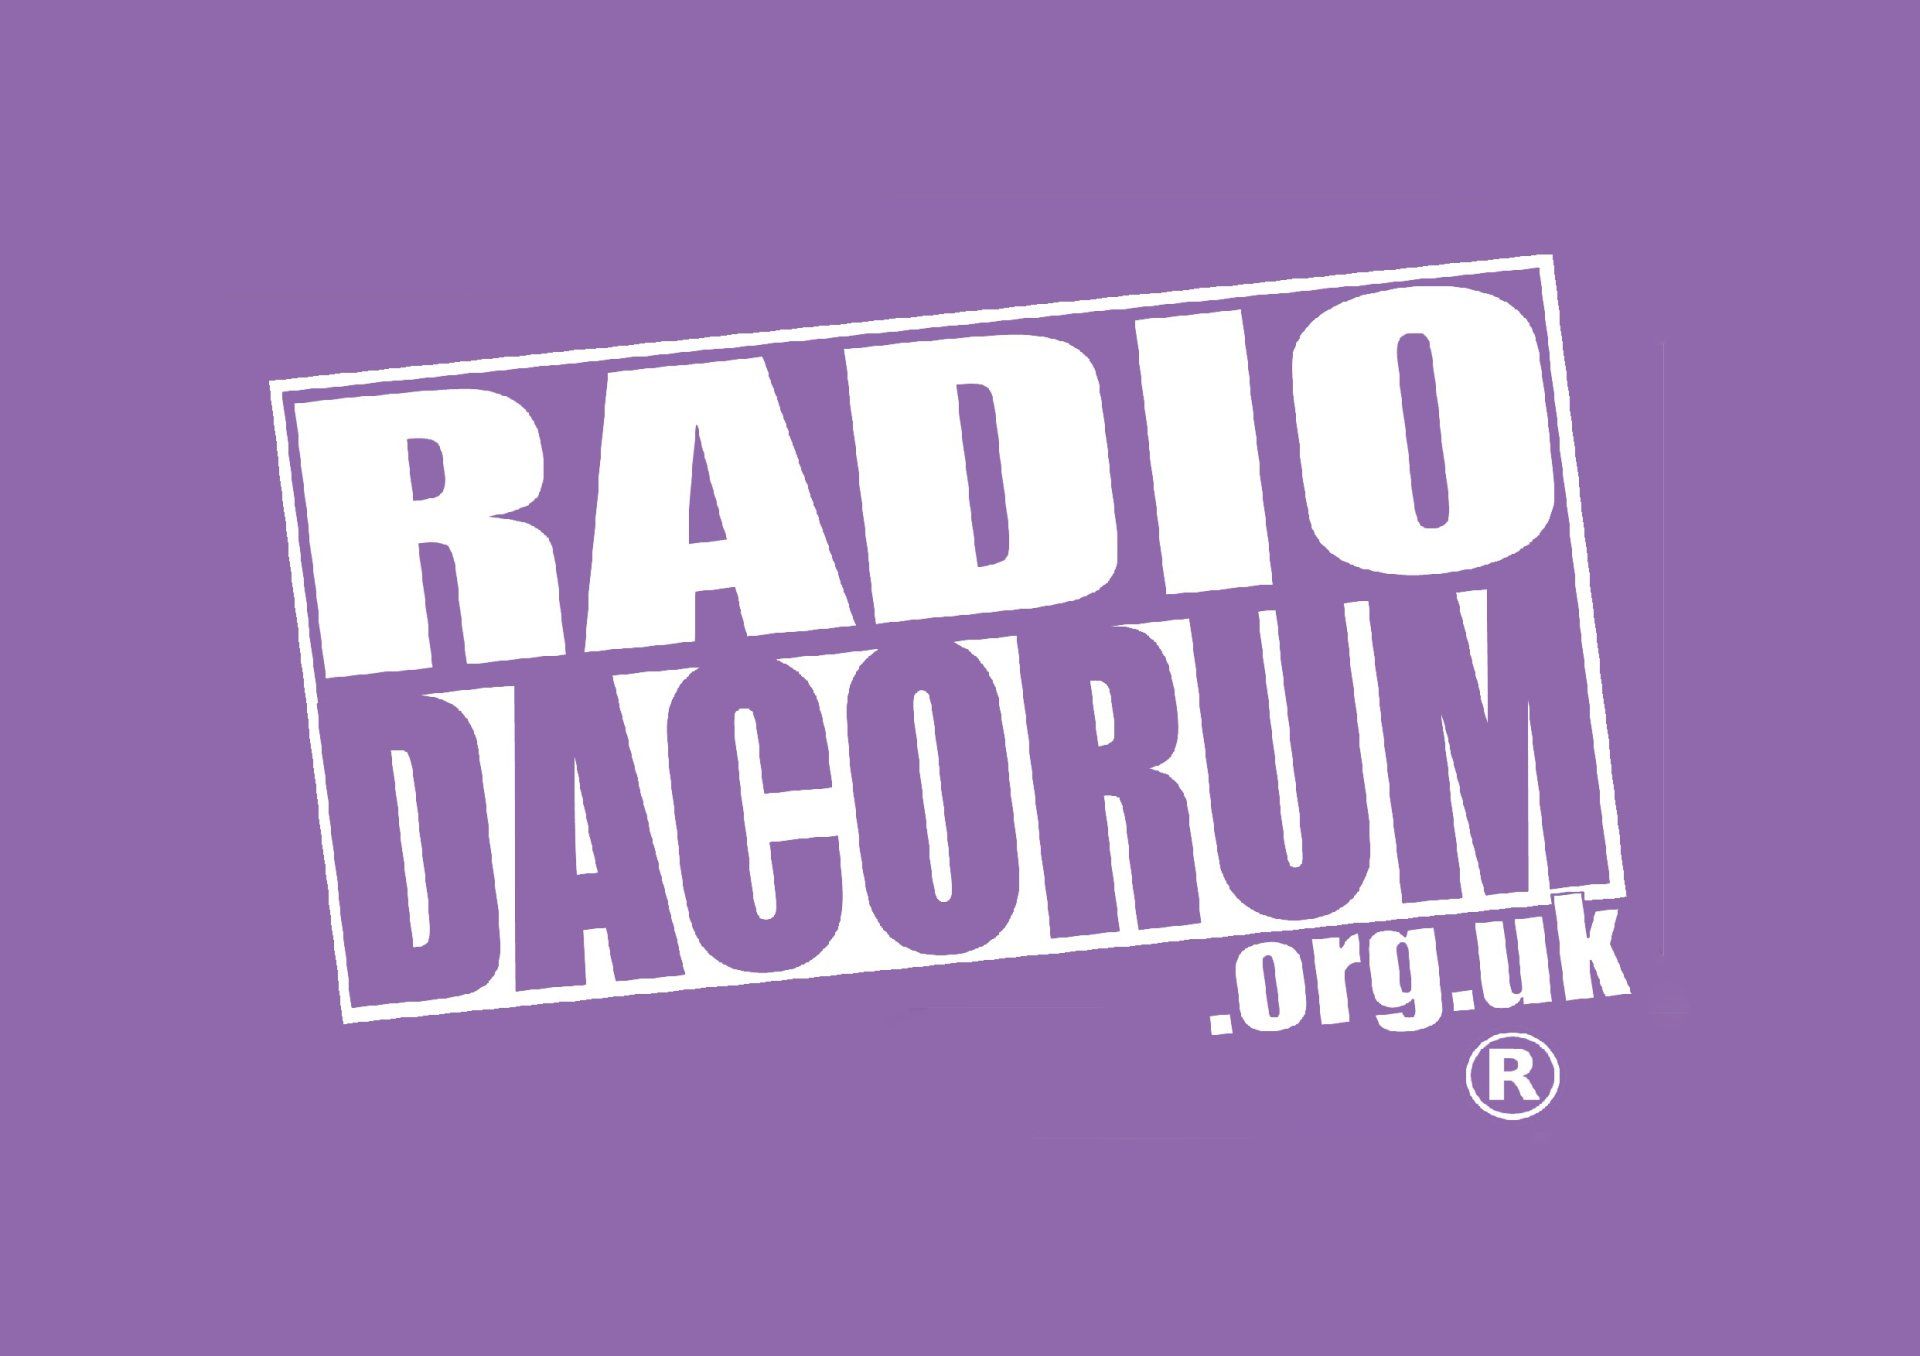 (c) Radiodacorum.org.uk